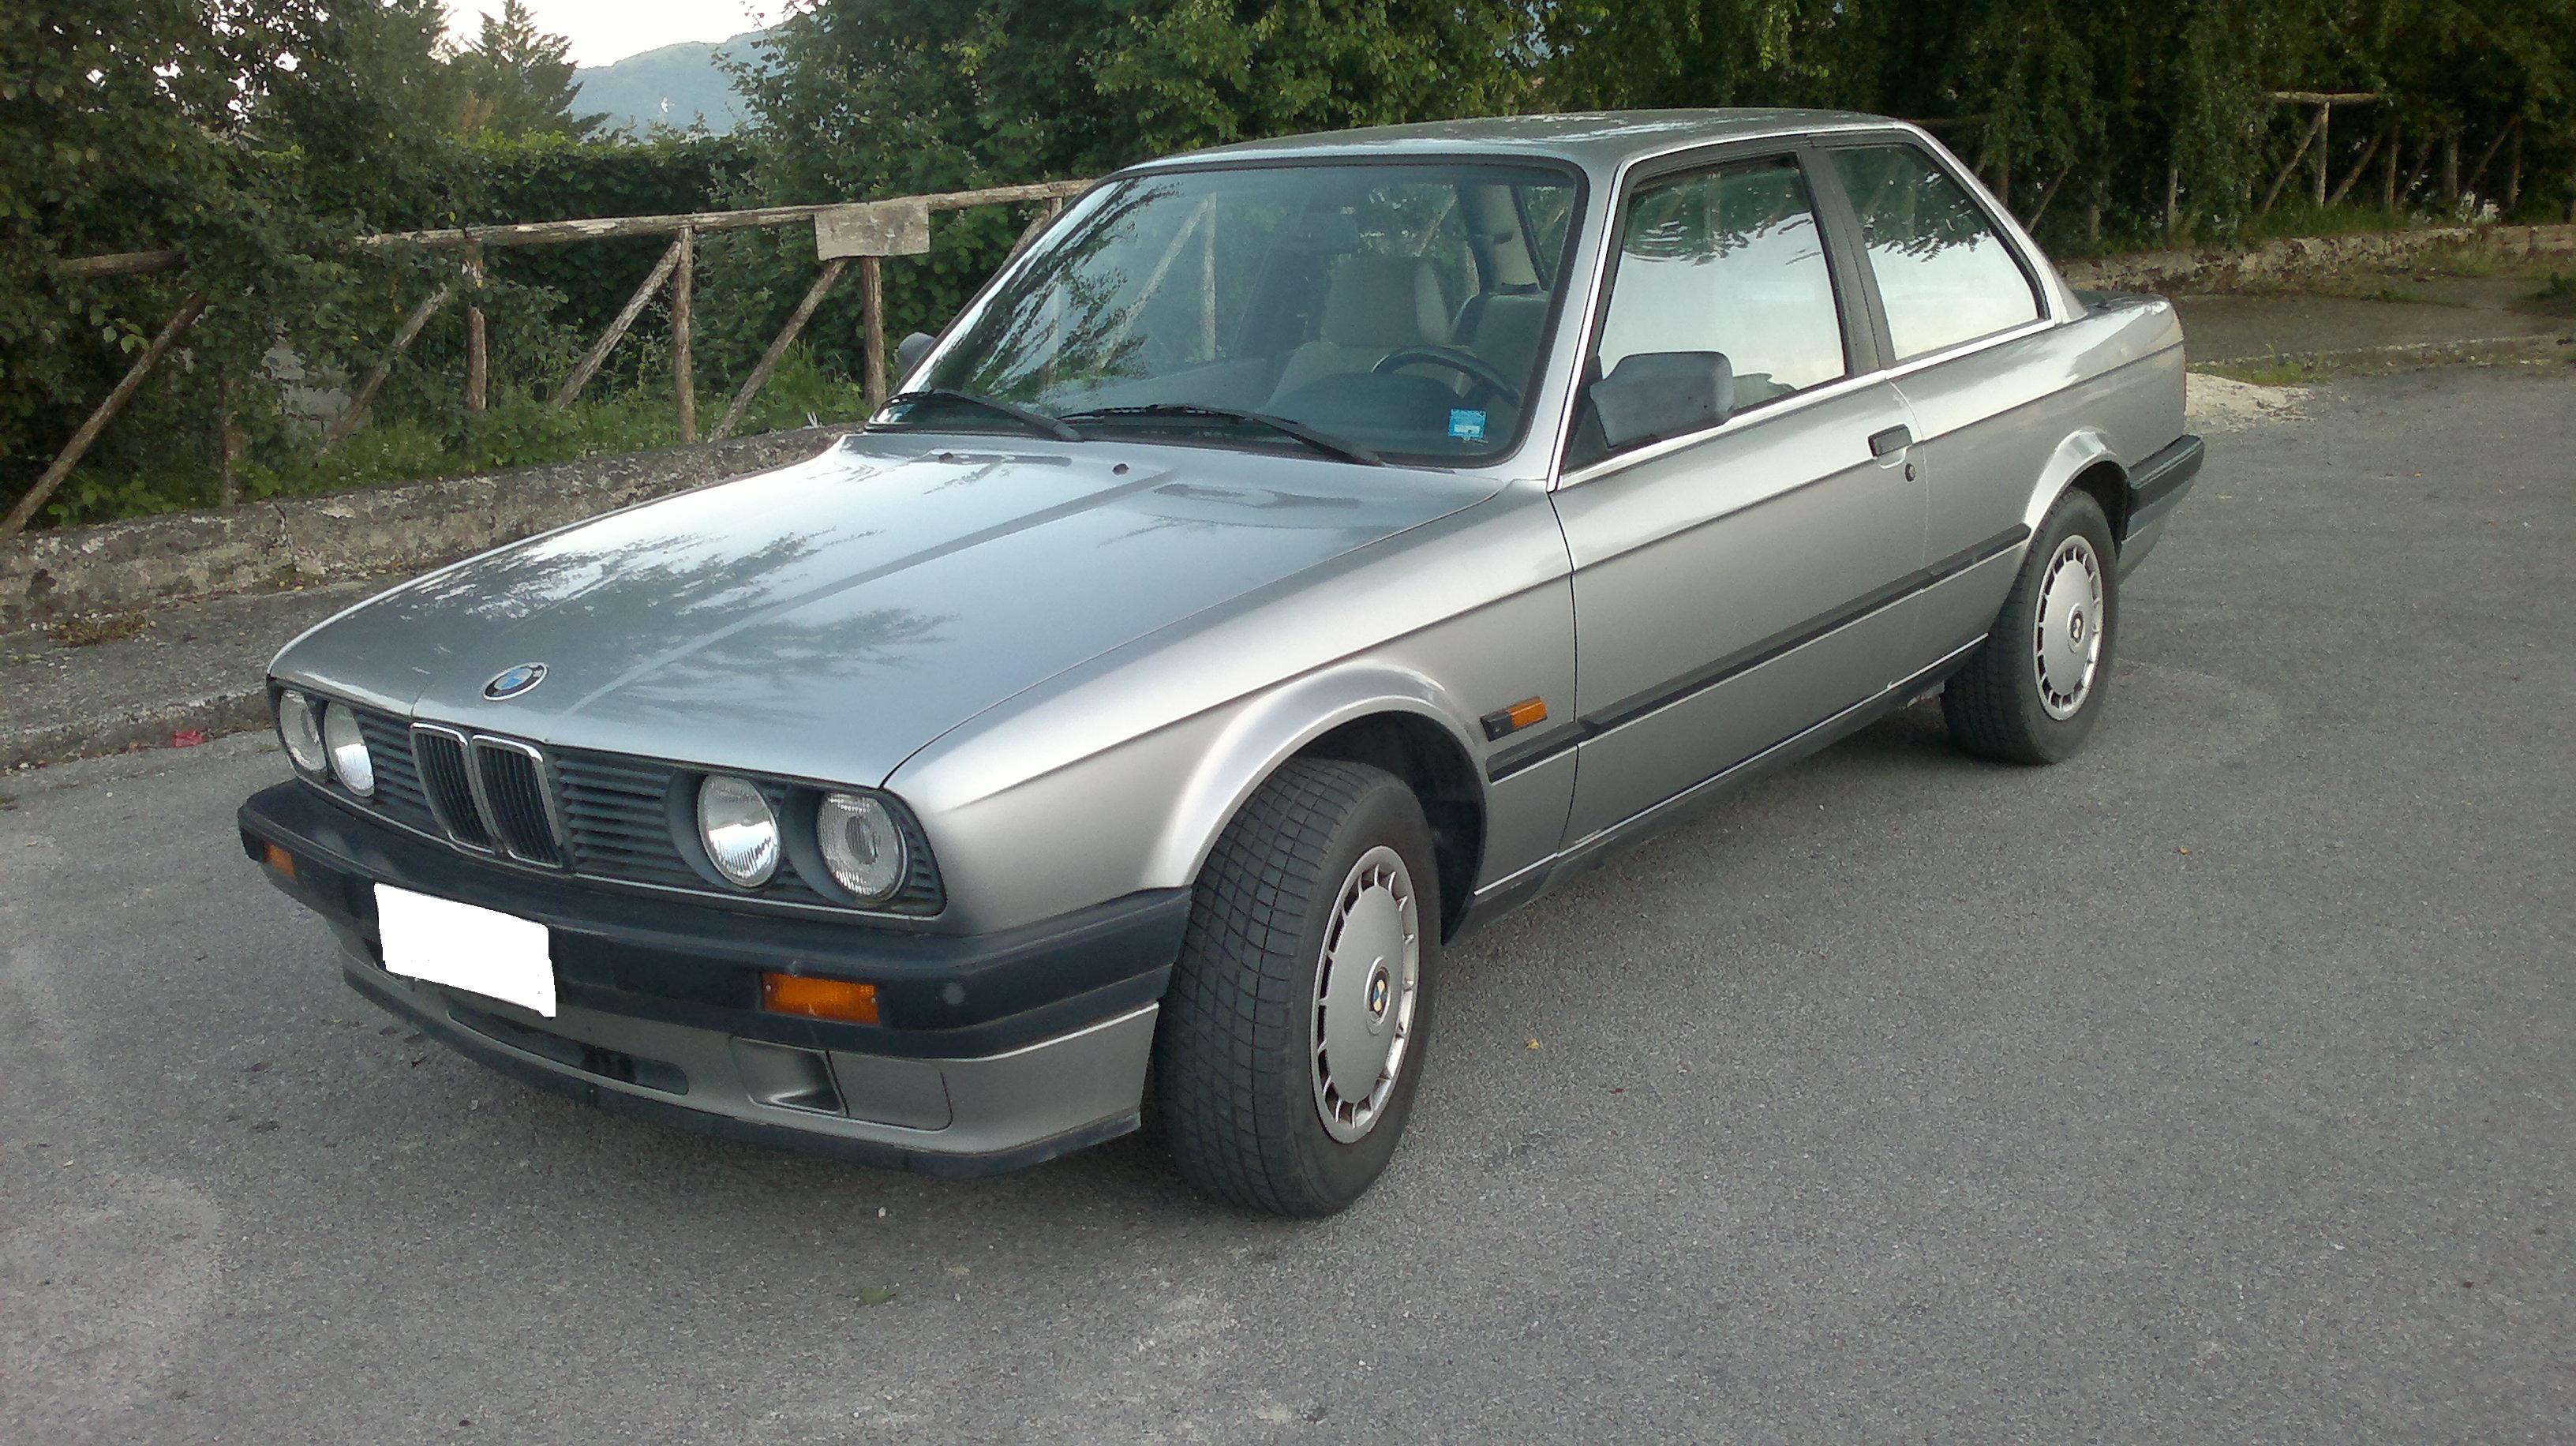 Marca / Modello: BMW Serie 3 Anno: 1984 Km: 150,000 Alimentazione: Benzina